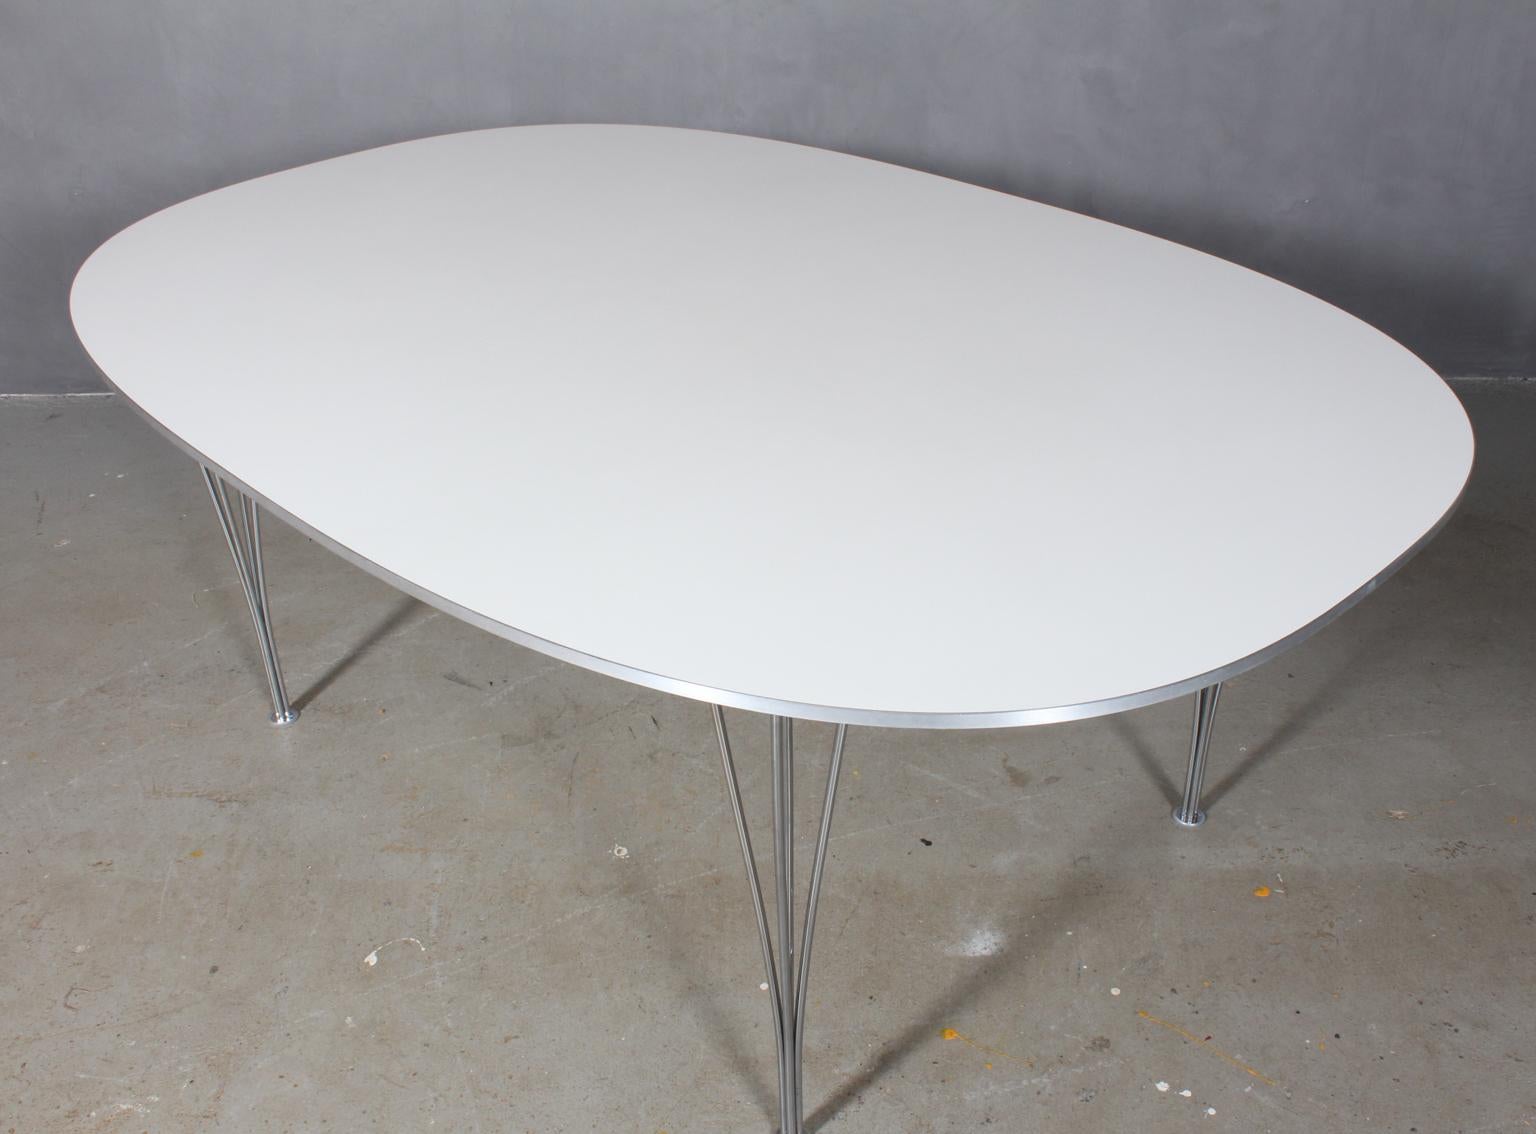 Piet Hein & Bruno Mathsson table de salle à manger ellipse en stratifié blanc. Liste Alu sur le côté.

Pieds en acier chromé.

Fabriqué par Fritz Hansen.
  